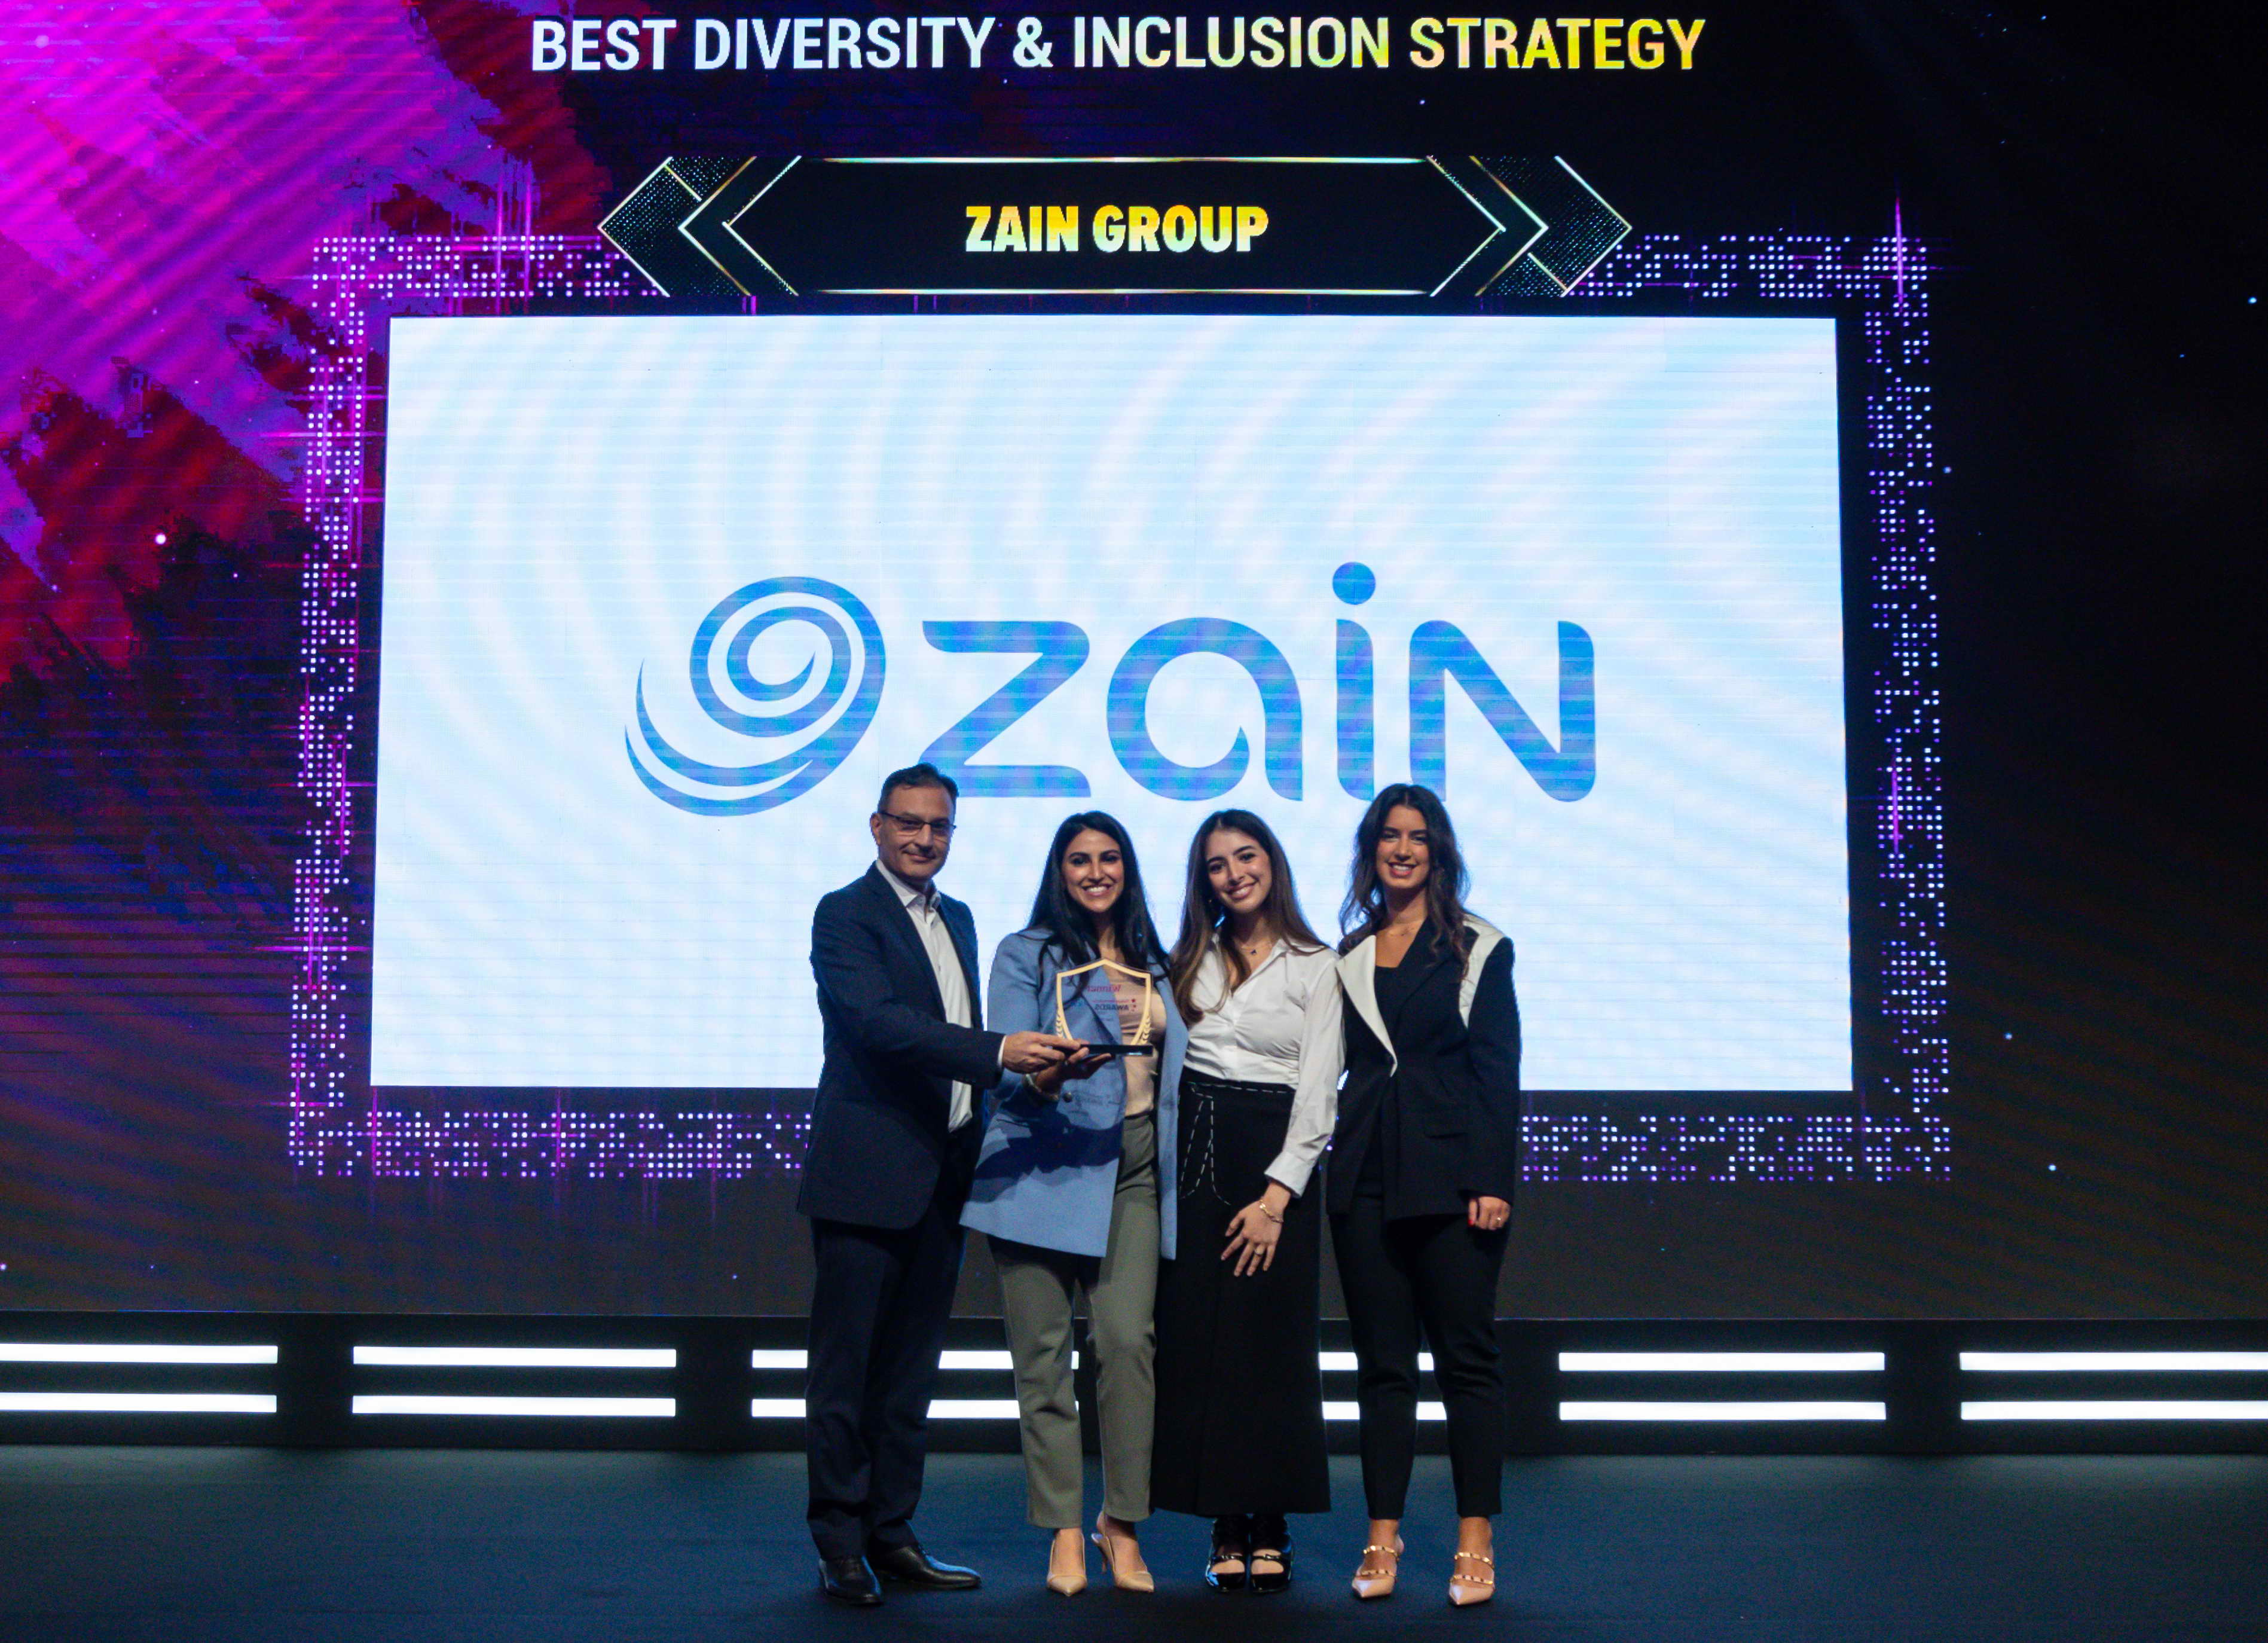 《زين》 تفوز بجائزة أفضل استراتيجية في 《التنوع والاشتمال》على مستوى الشرق الأوسط